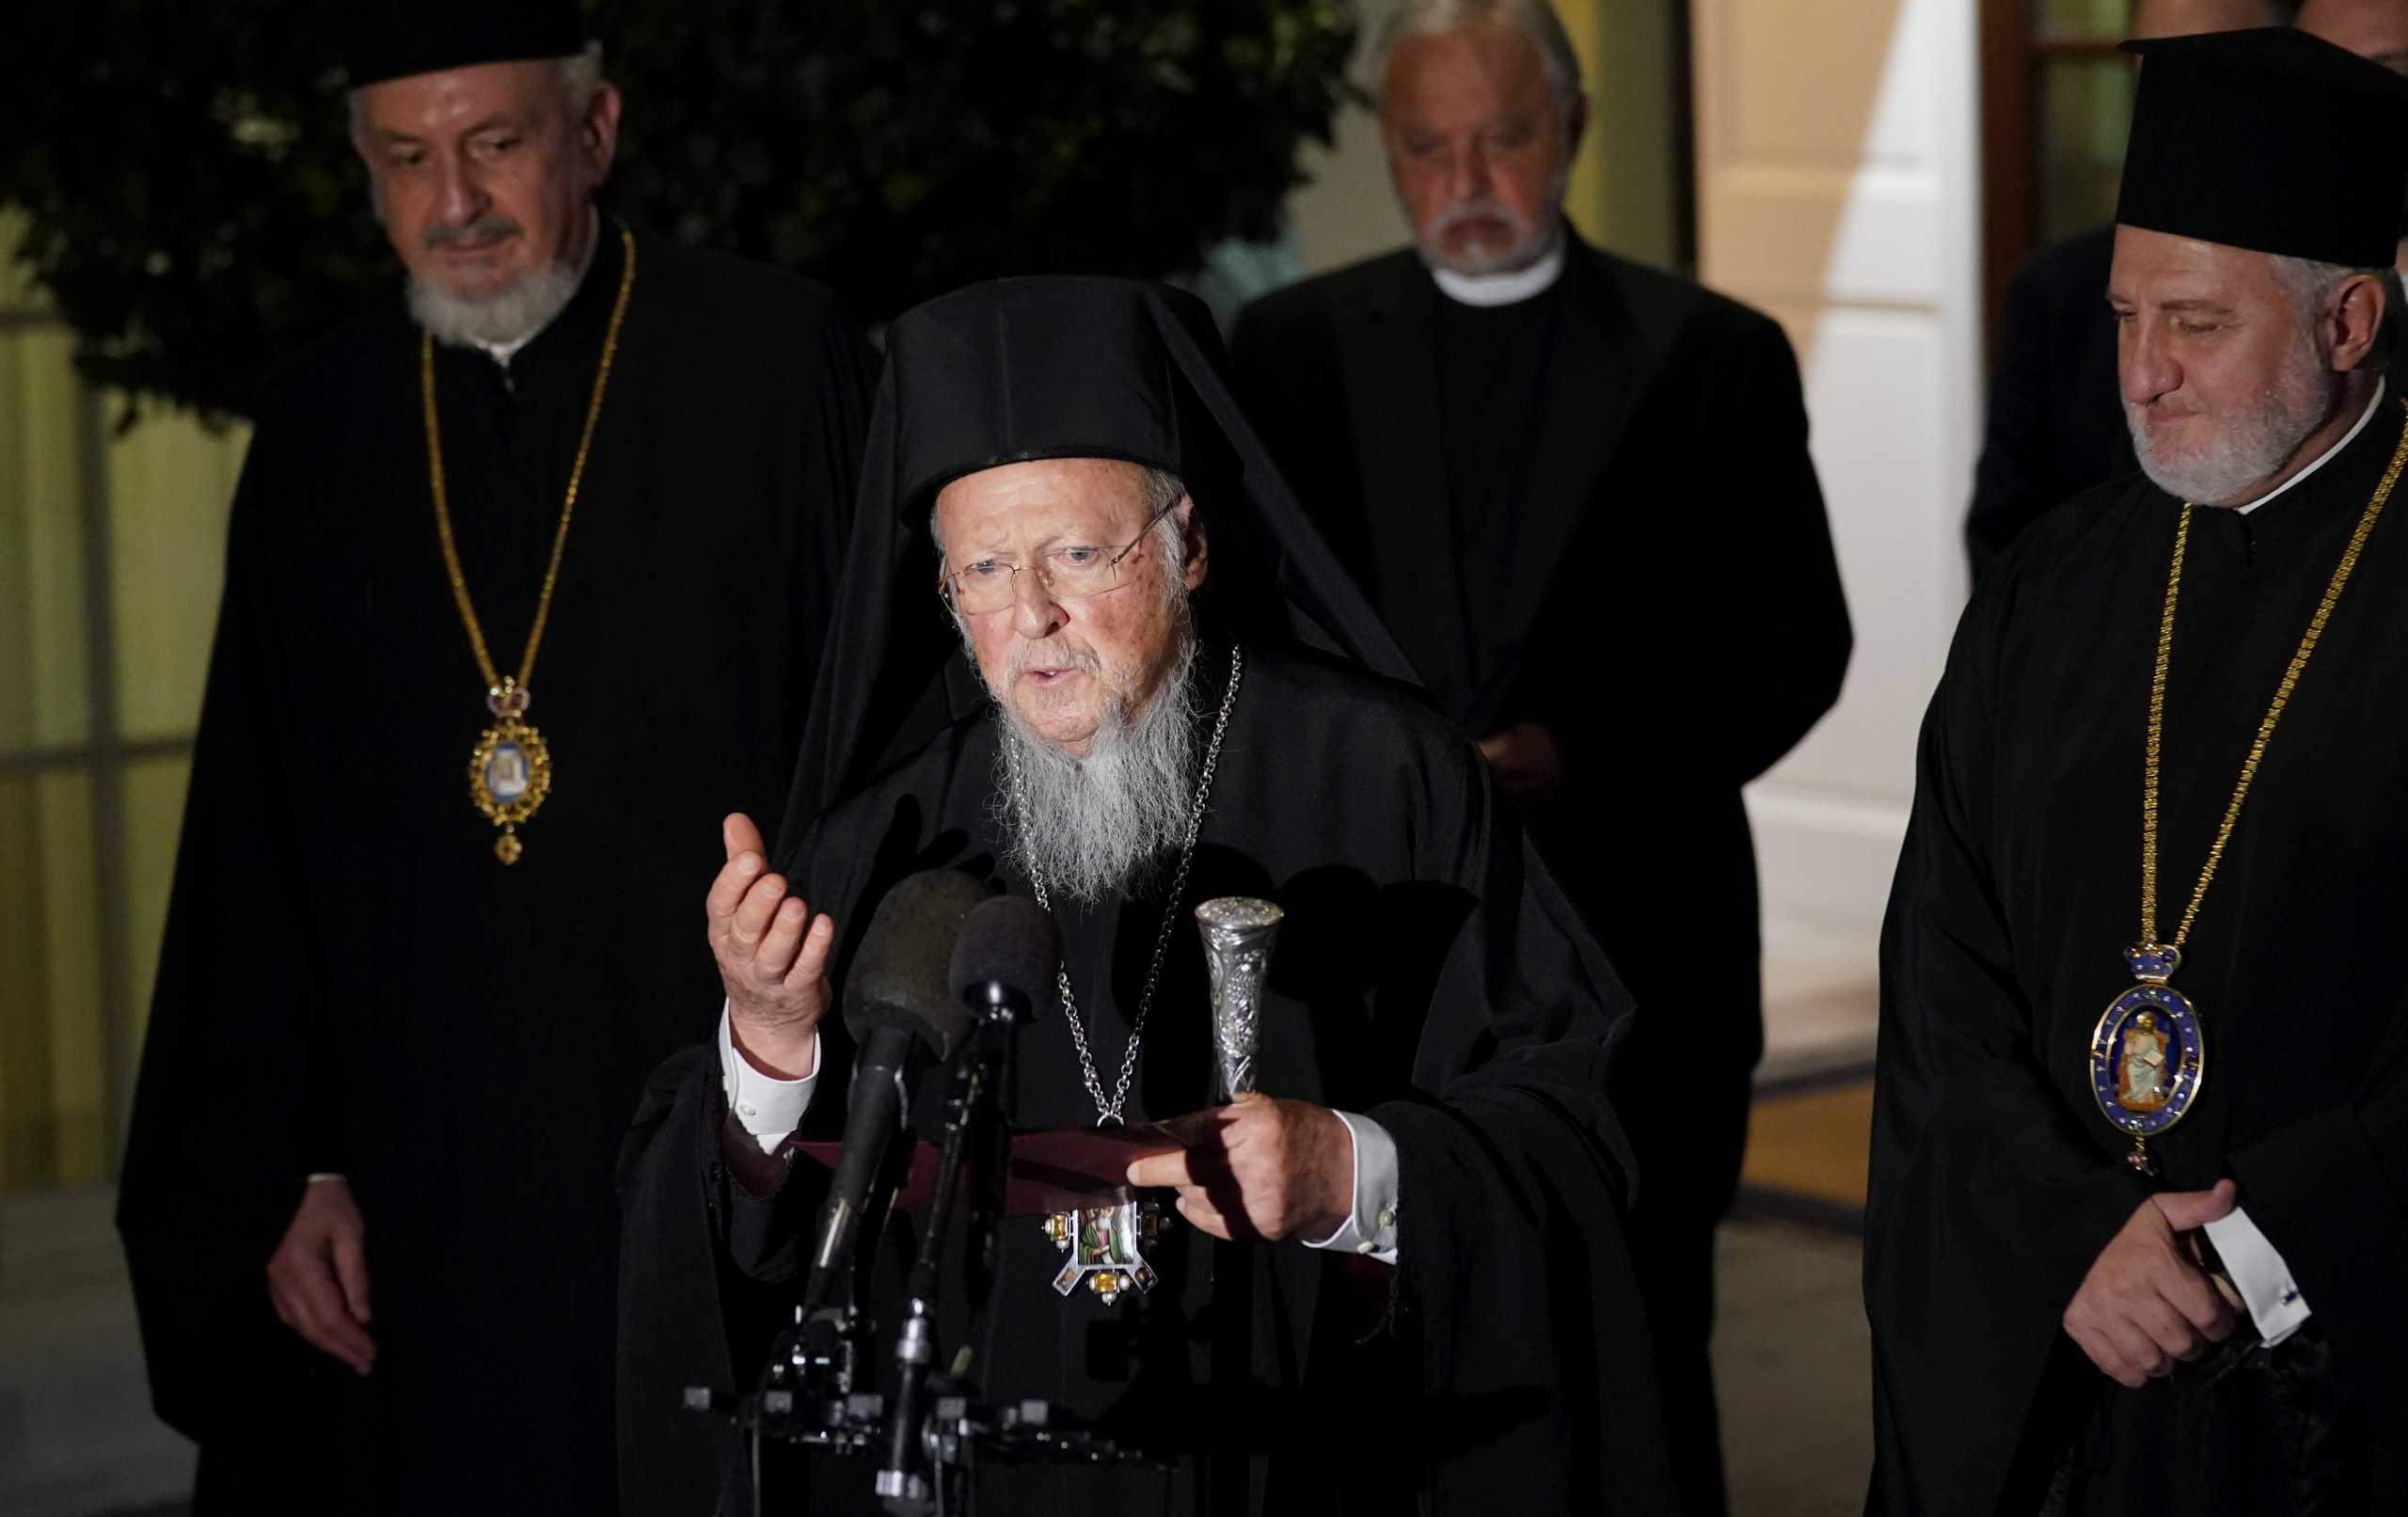 Οικουμενικός Πατριάρχης Βαρθολομαίος: Πήρε εξιτήριο από το νοσοκομείο της Νέας Υόρκης